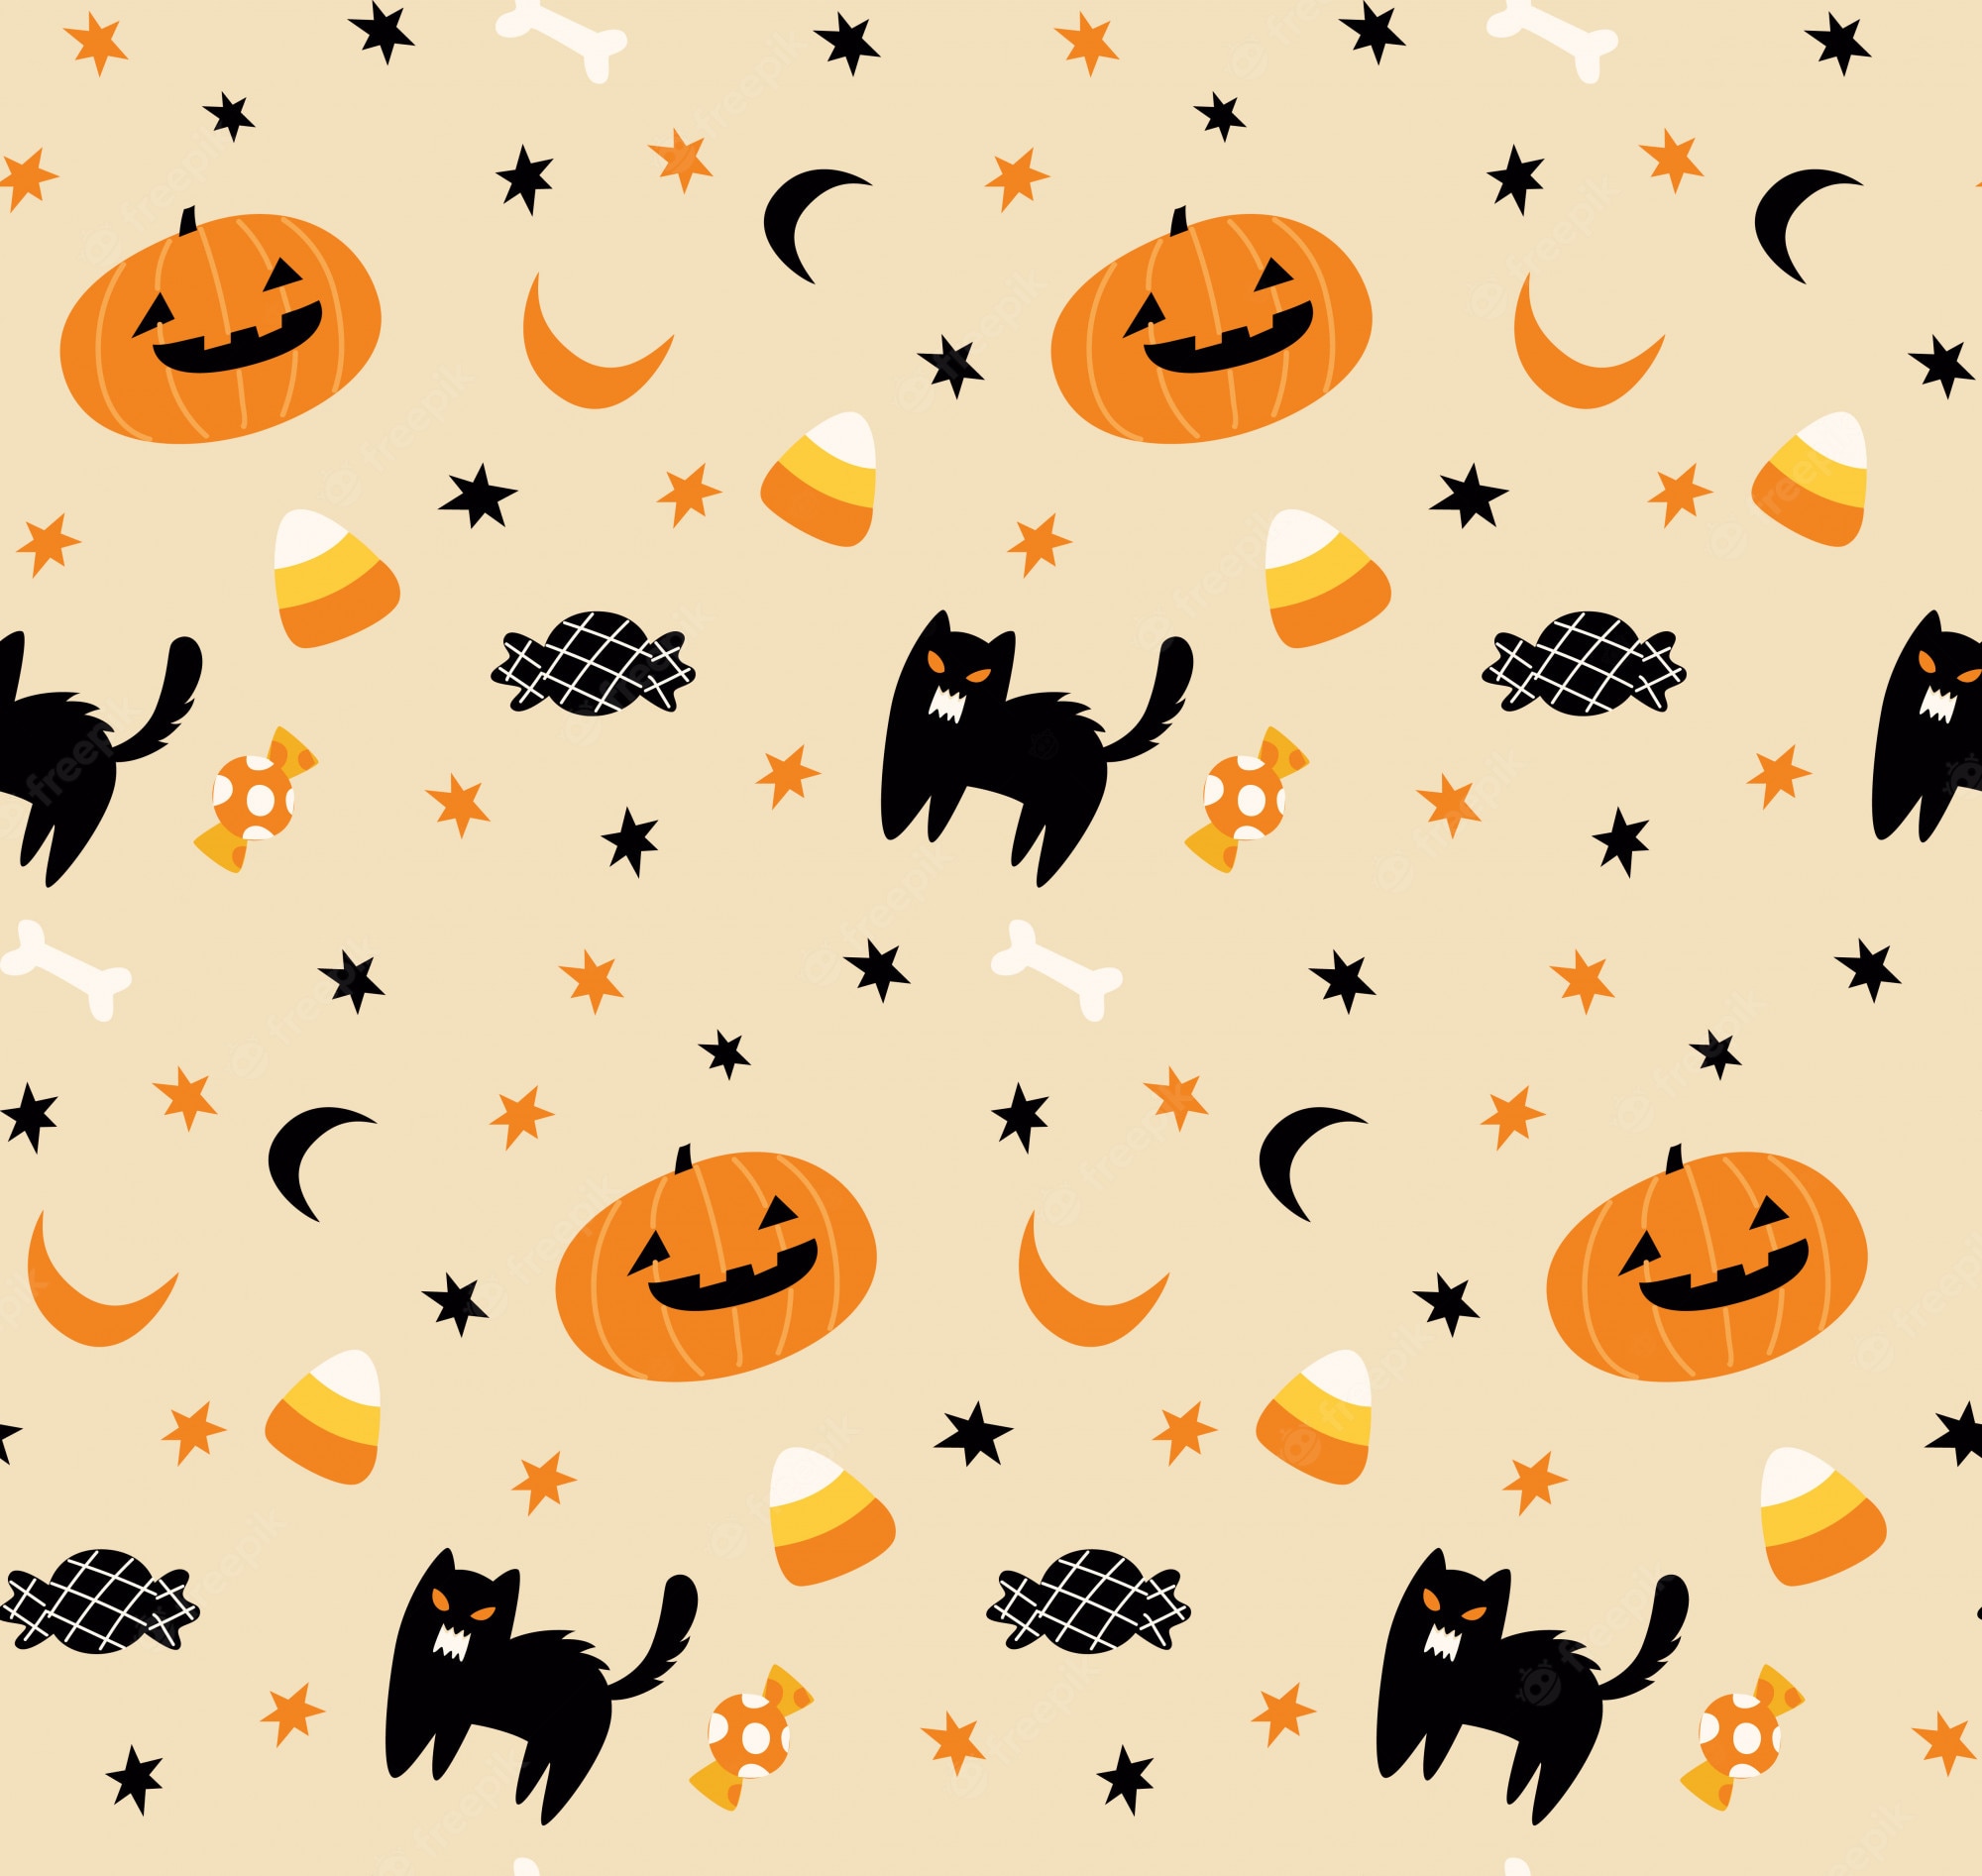 80298 Cute Halloween Wallpaper Images Stock Photos  Vectors   Shutterstock